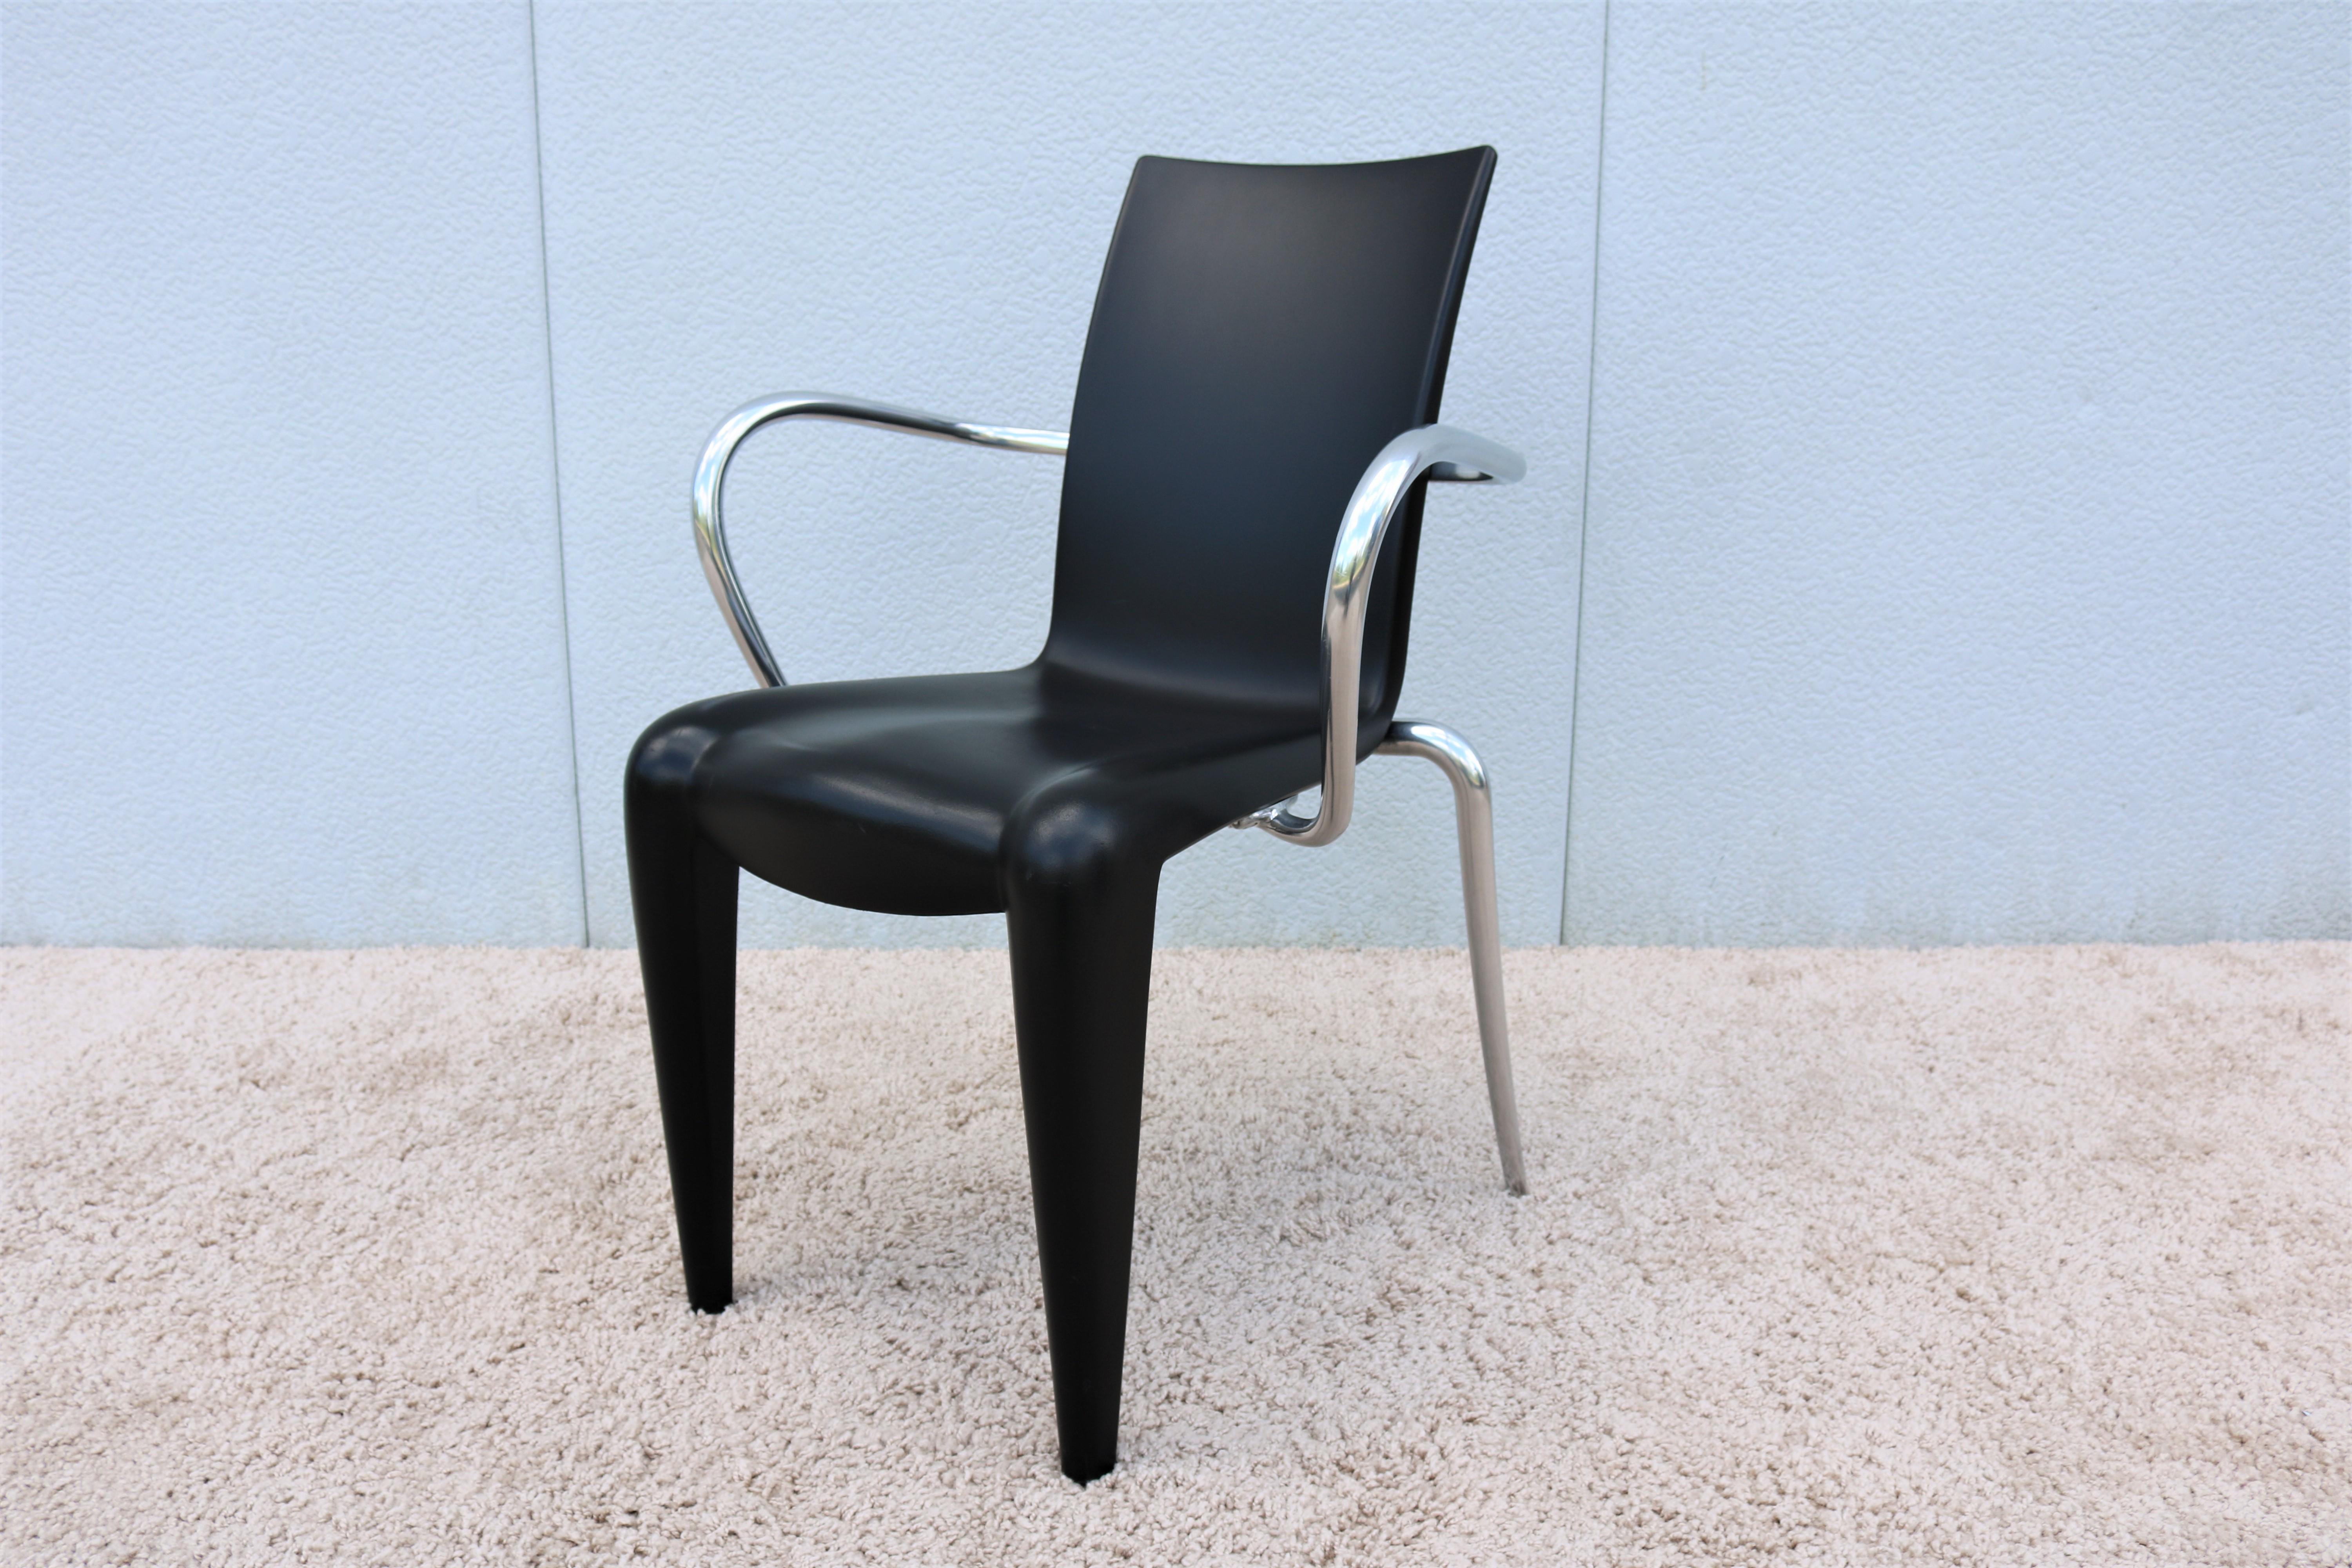 Philippe Starck est considéré comme la principale figure française dans le domaine du nouveau design dans les années quatre-vingt.
En 1991, il a conçu la chaise Louis 20 avec la courbe frontale caractéristique de Starck, aux formes sensuelles et